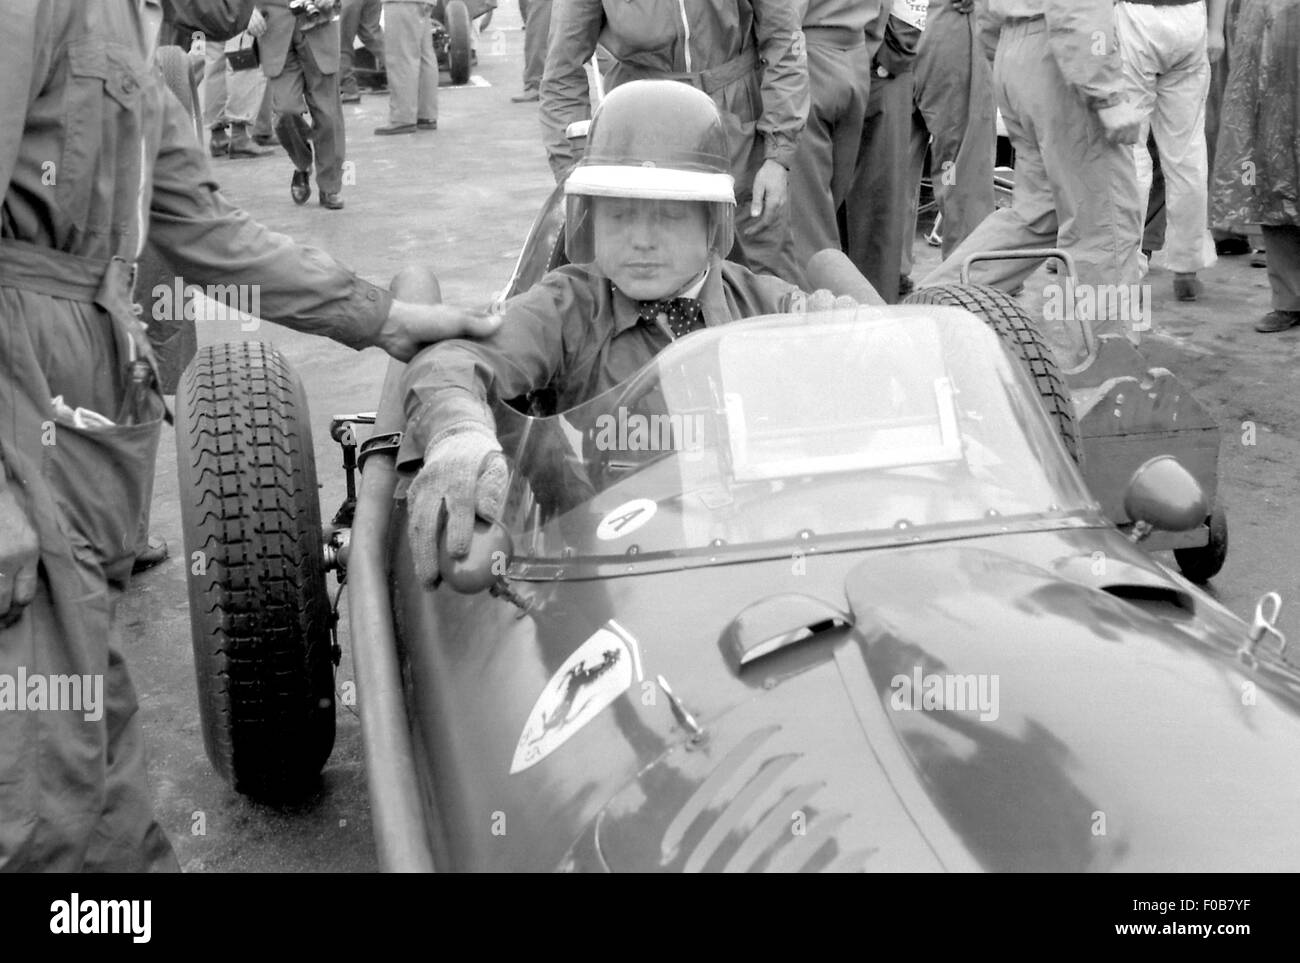 Portuguese GP in Oporto 1958 Stock Photo